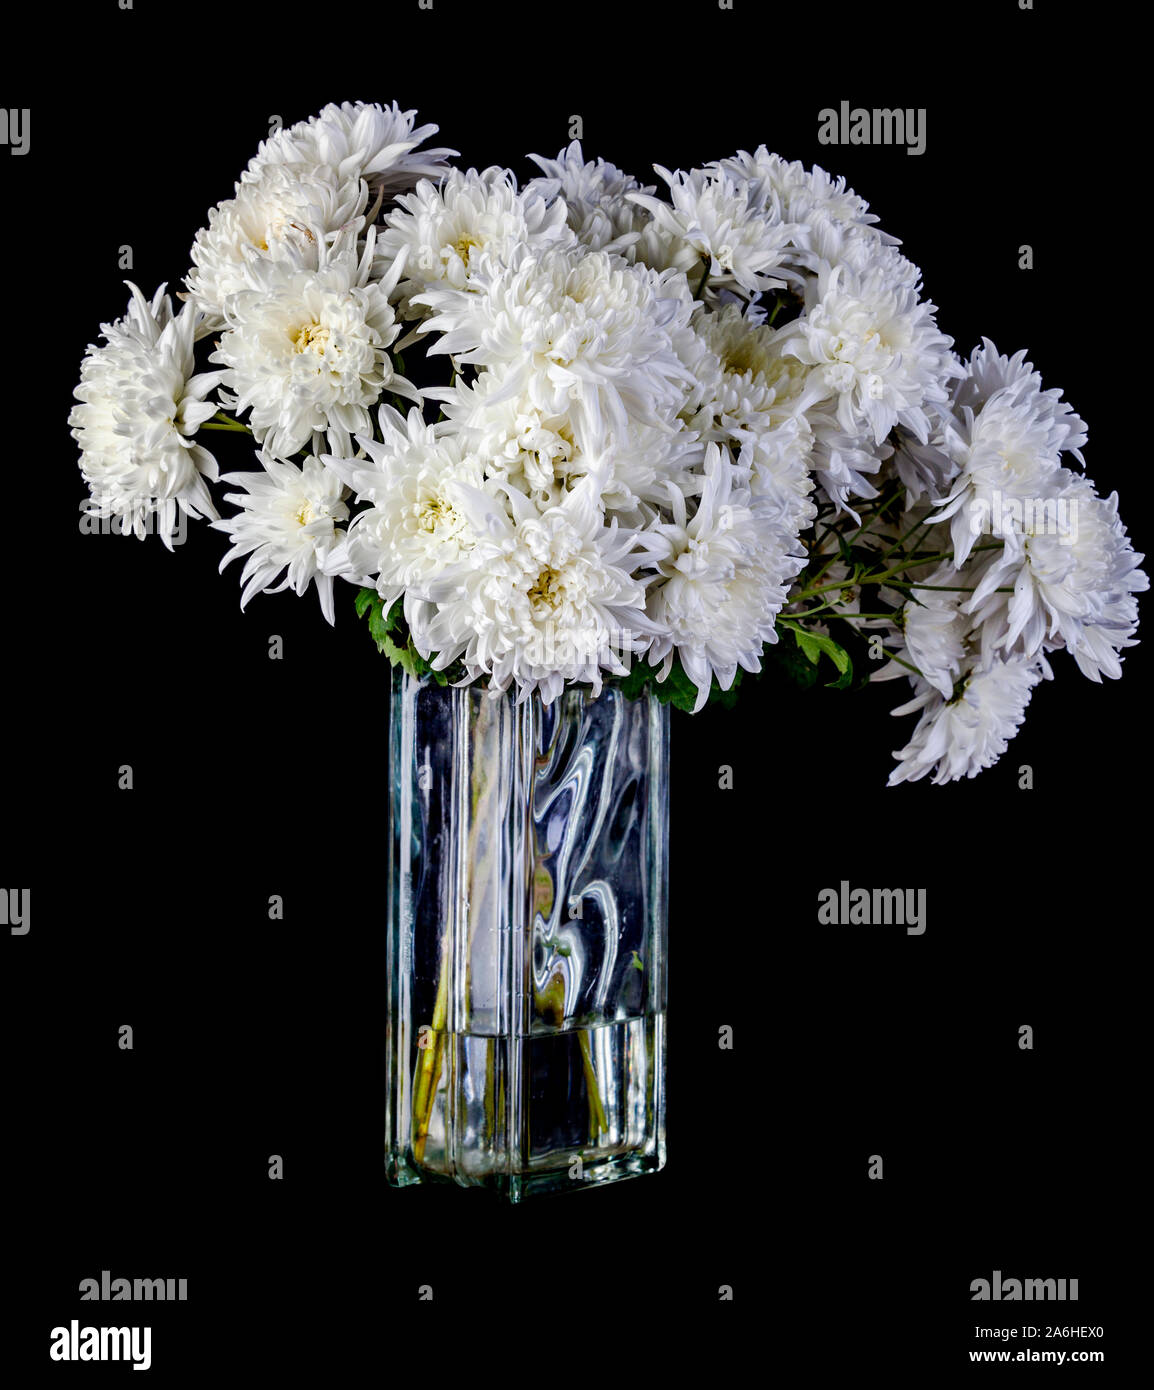 Chrysanthemen sind immer noch eine der beliebtesten Geschenke zum Muttertag. Durch einen glücklichen Zufall, ihre langen, fast unaussprechlichen Namen endet in um 'm' und Th Stockfoto